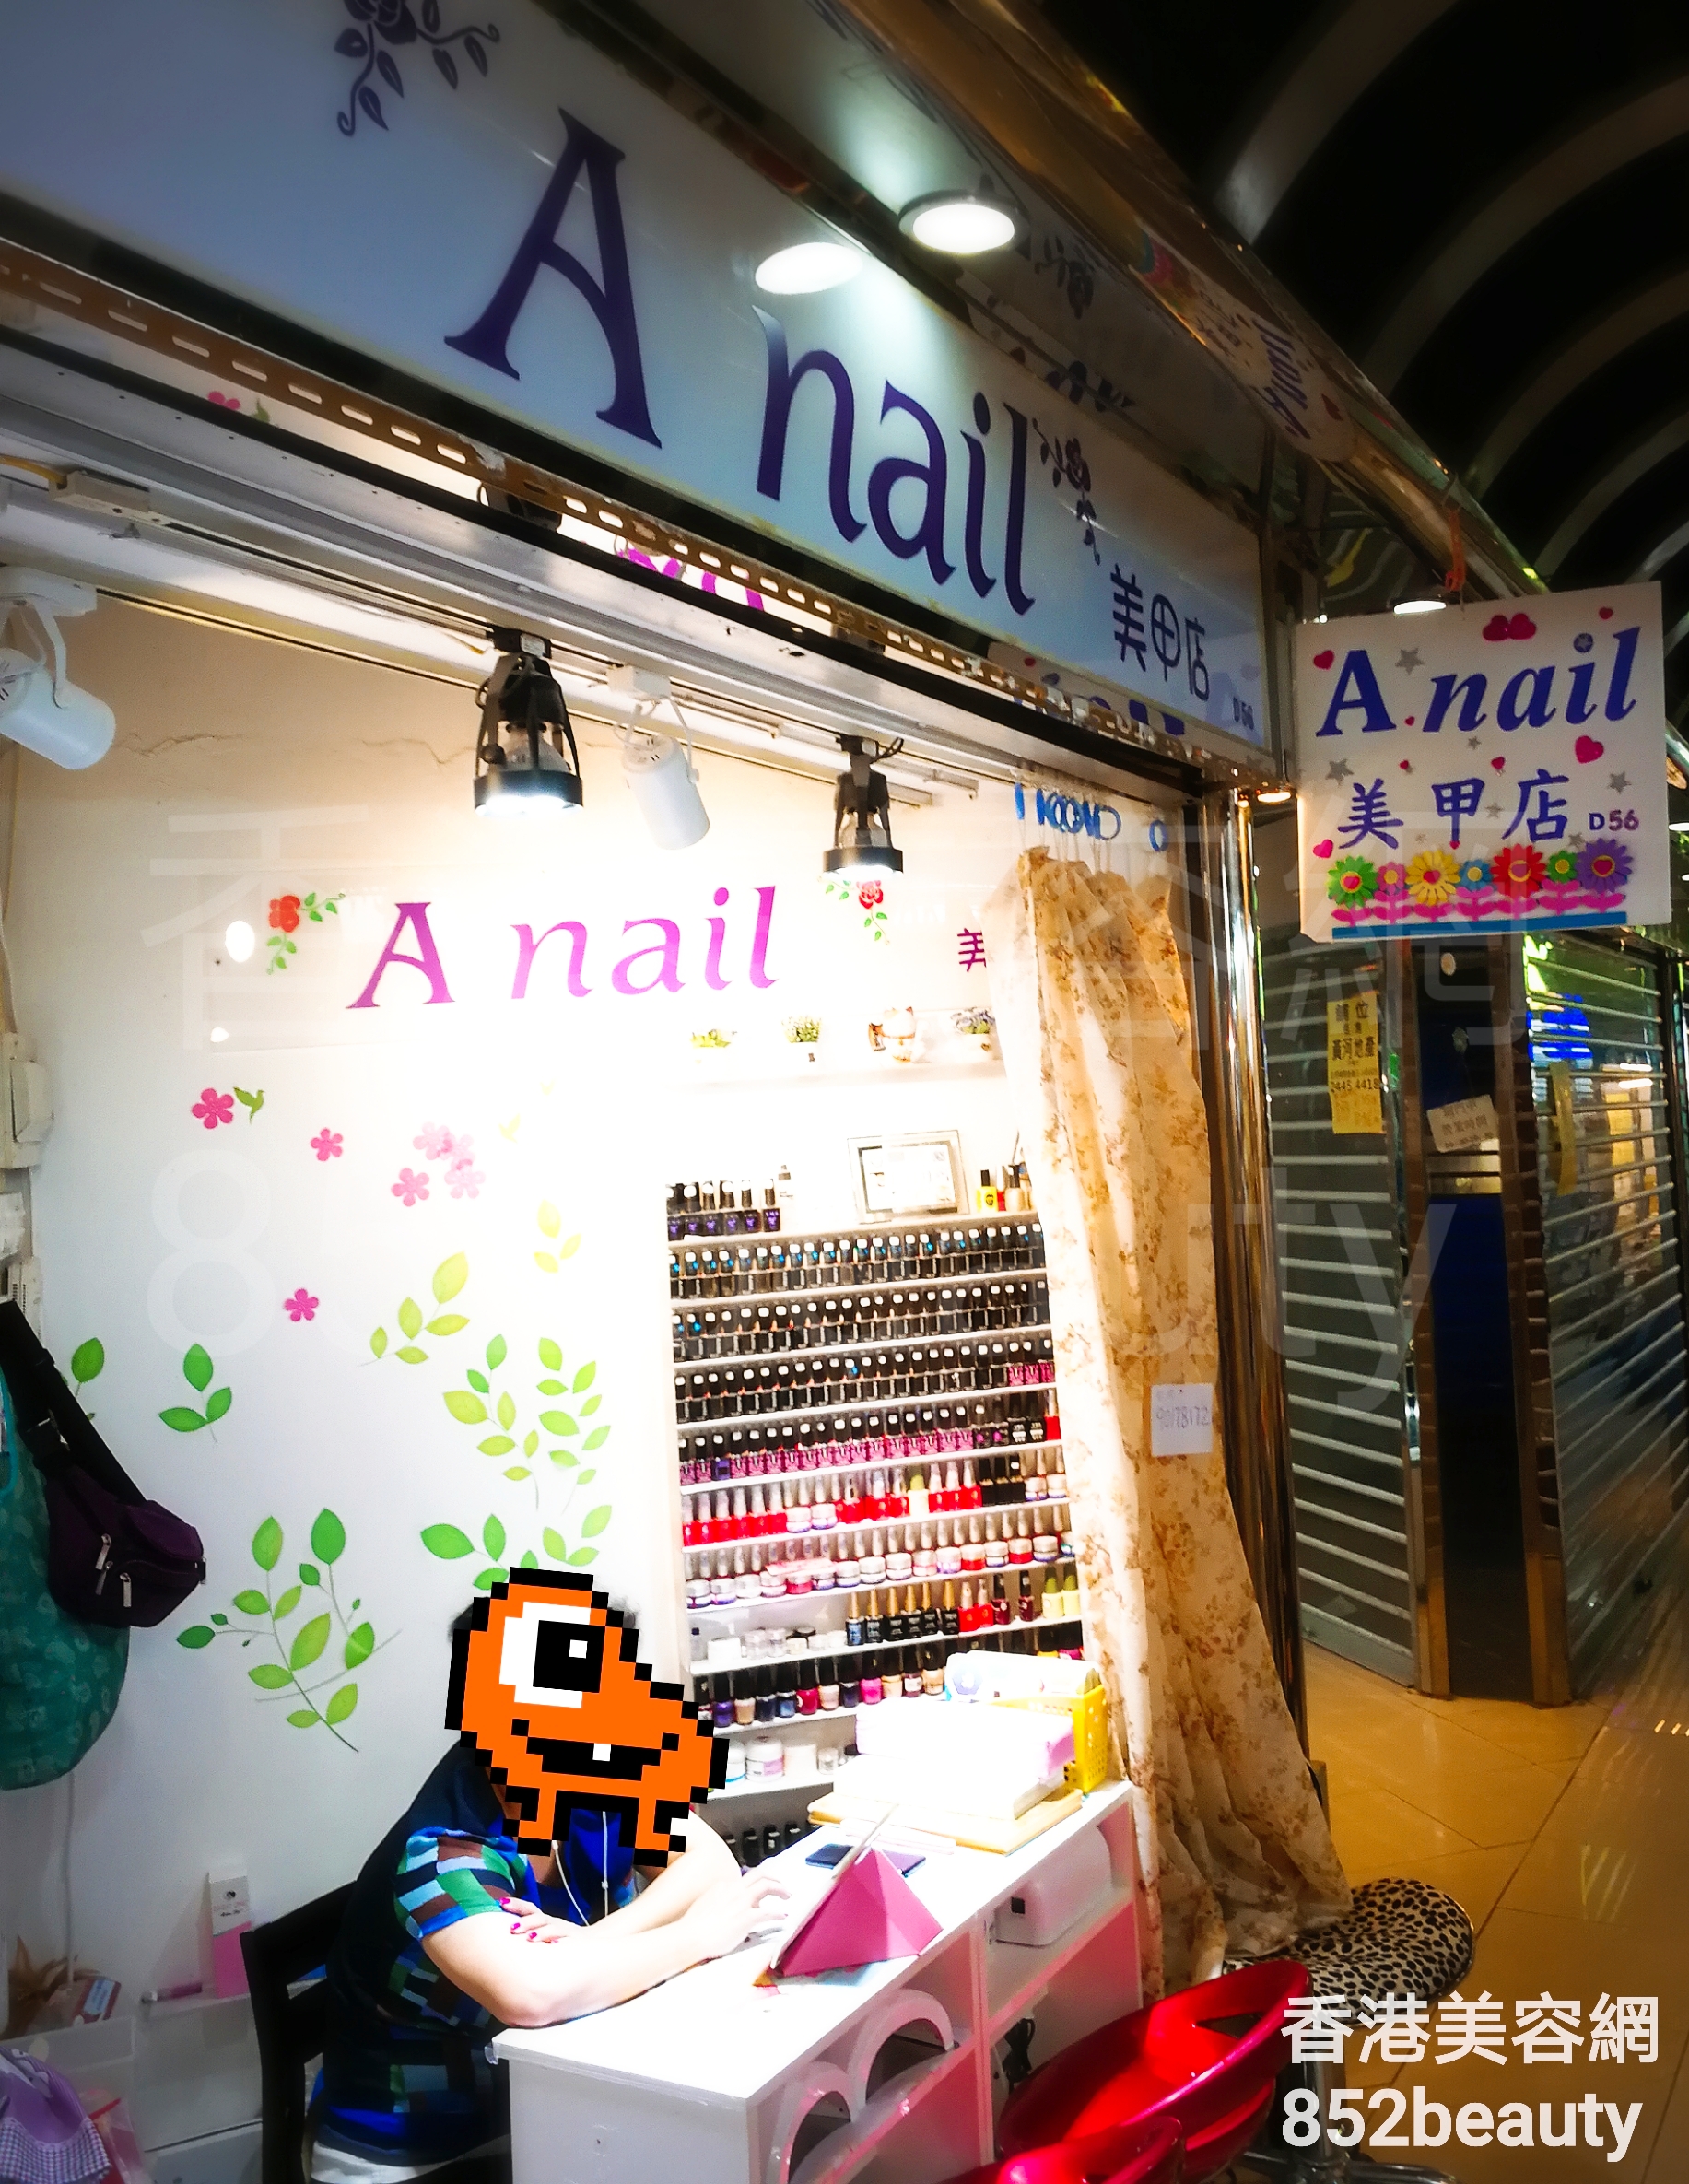 美容院: A nail 美甲店